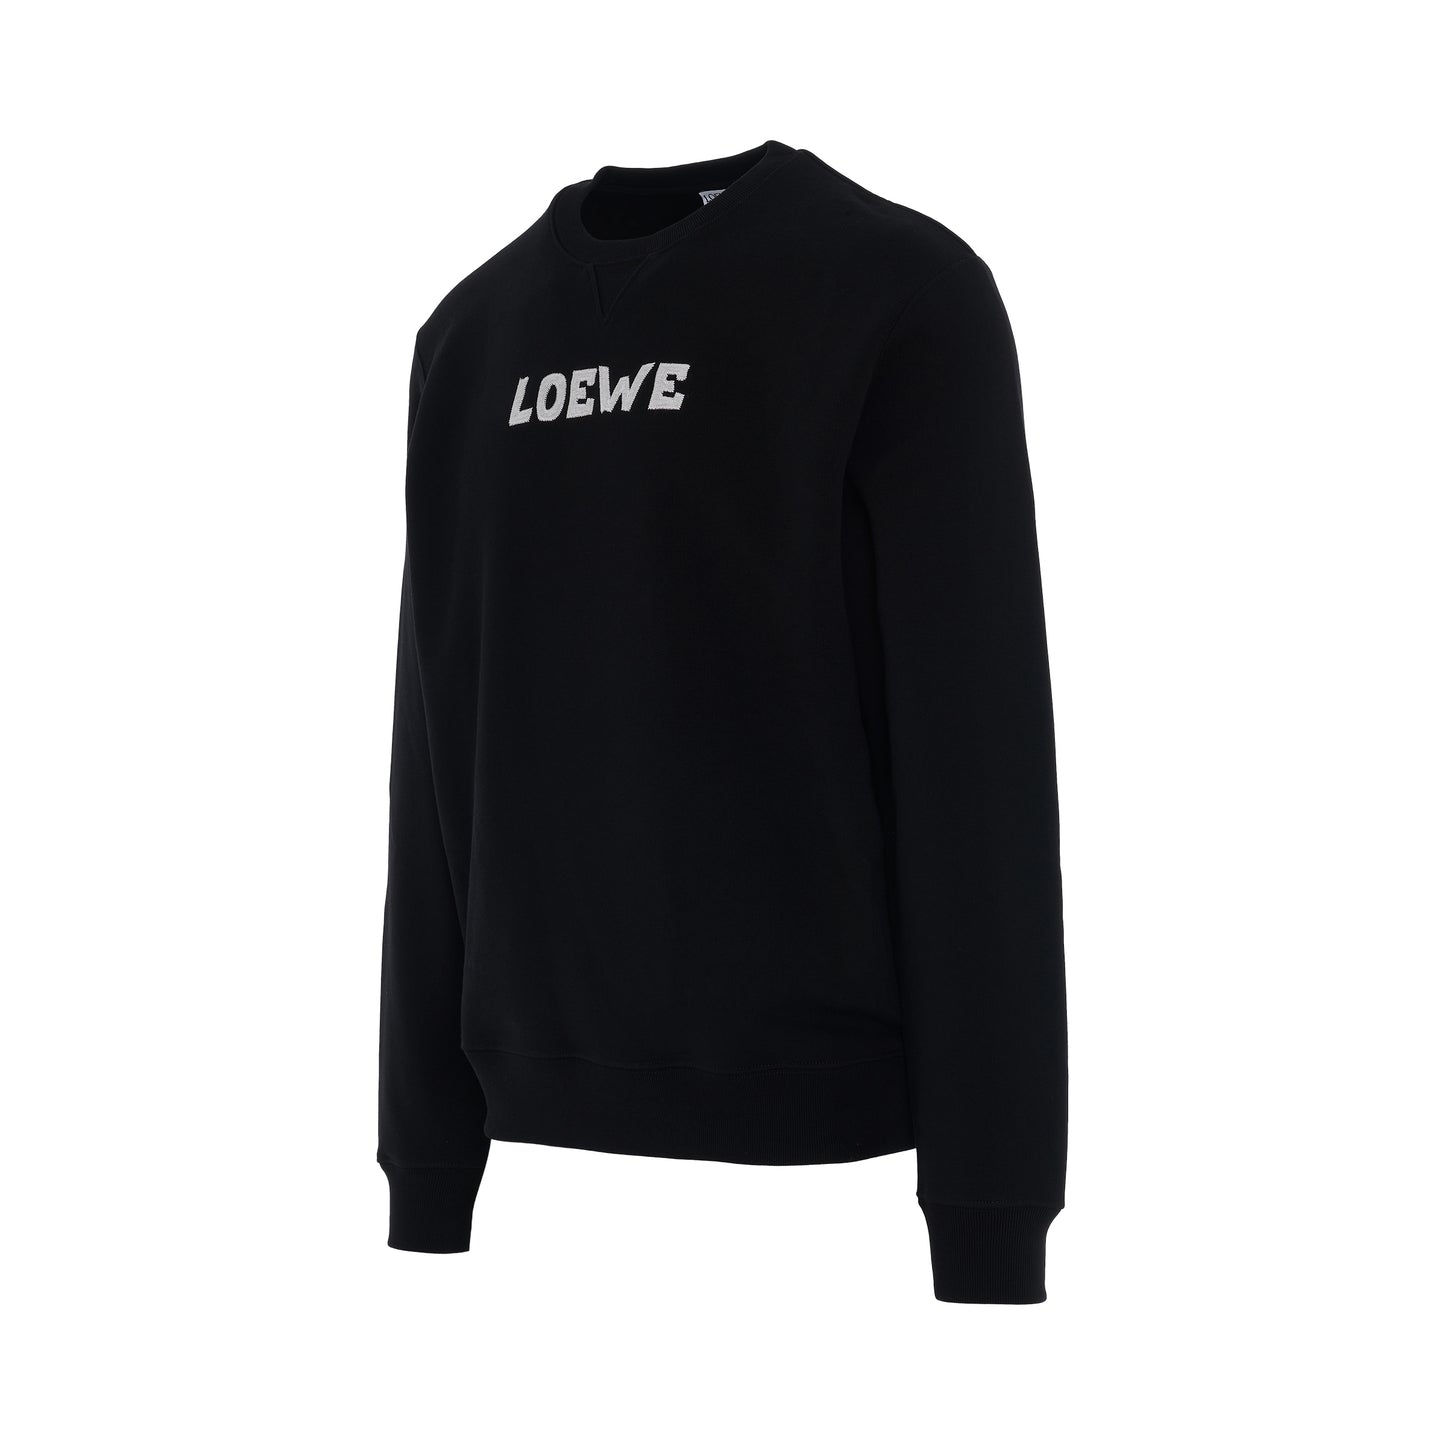 Loewe Embroidered Sweatshirt in Black